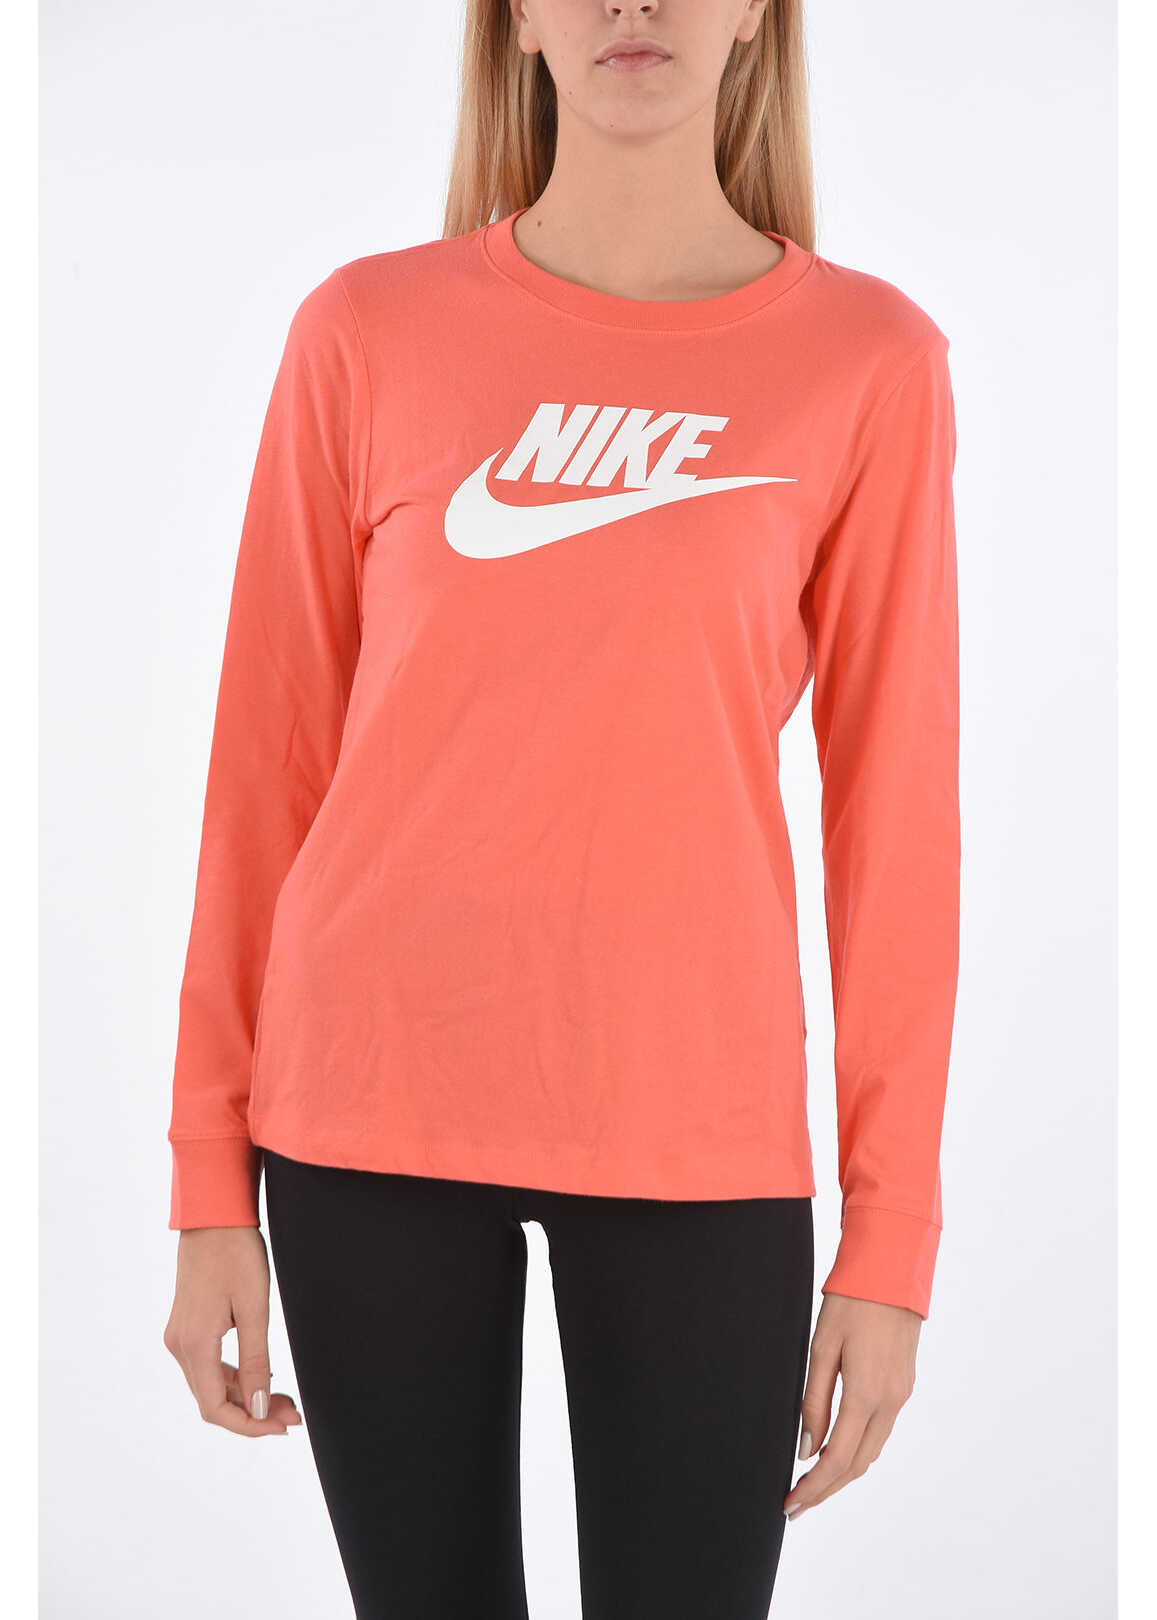 Nike Logo Printed T-Shirt Orange image12